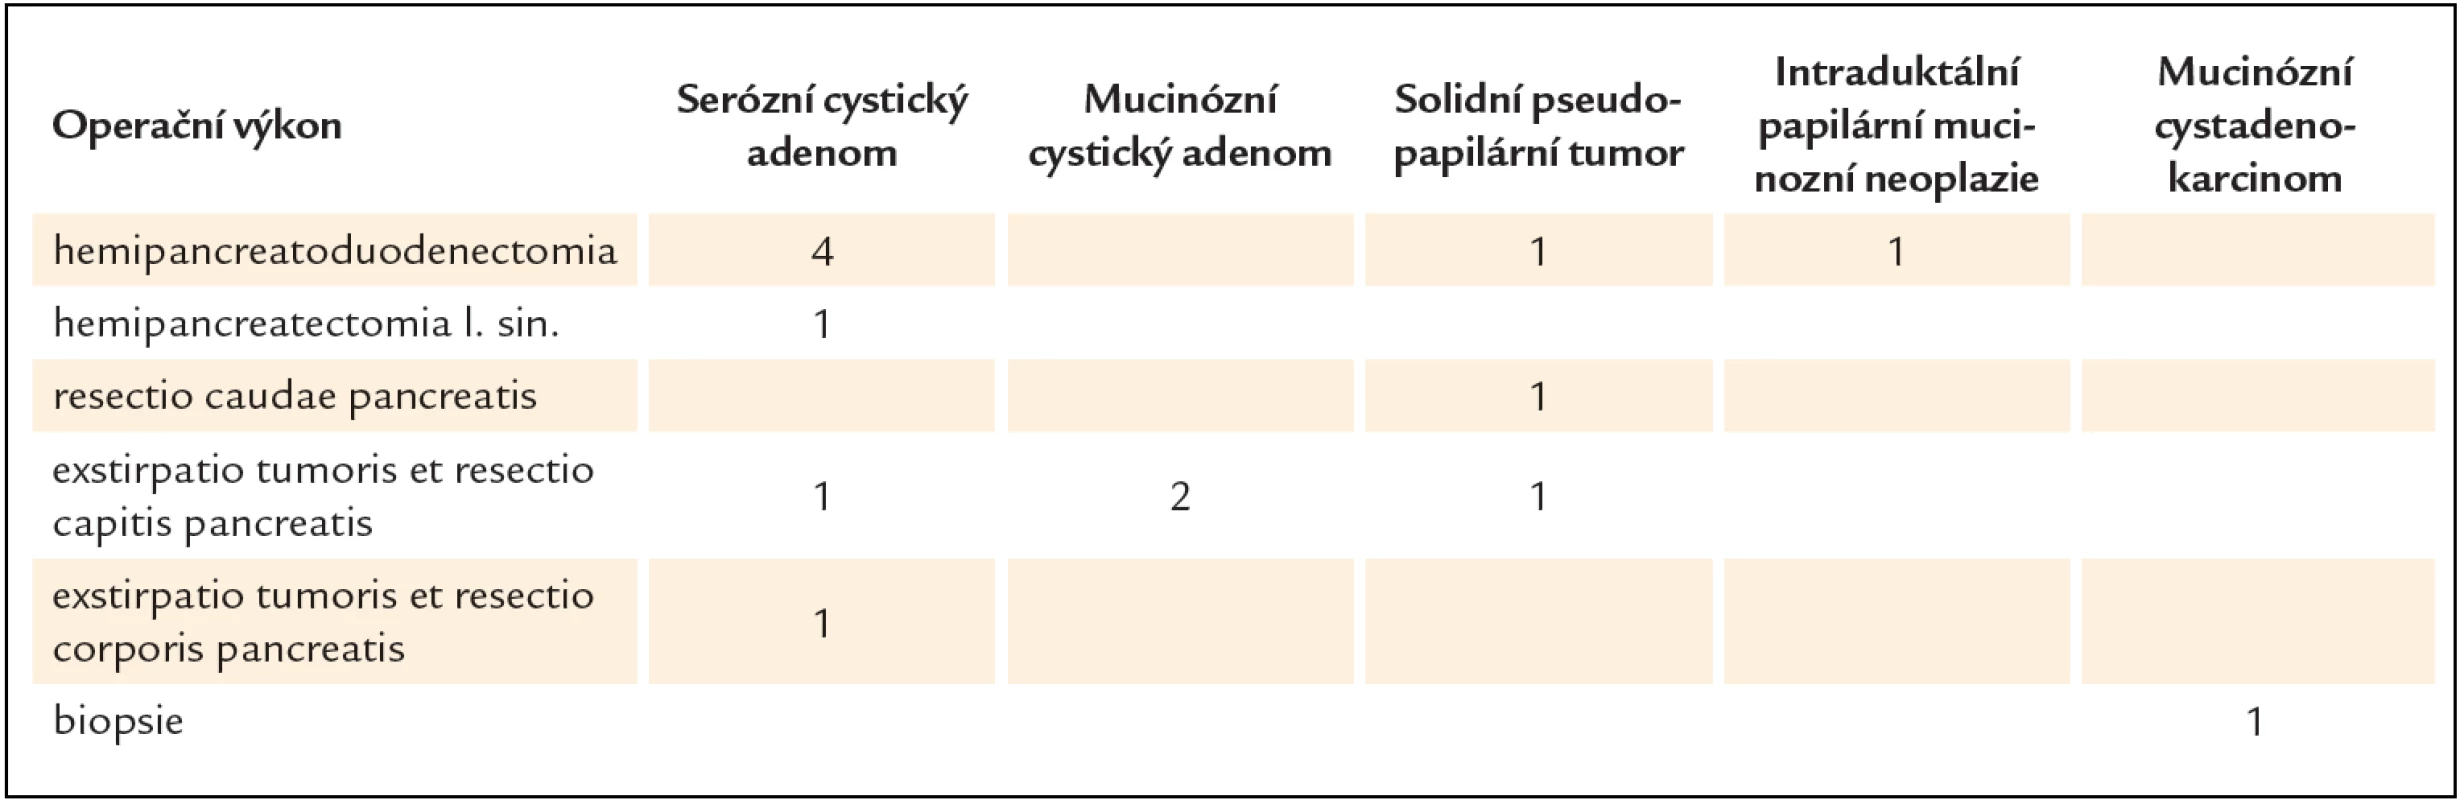 Volba operačního výkonu ve vztahu k histologické specifikaci cystického tumoru pankreatu.